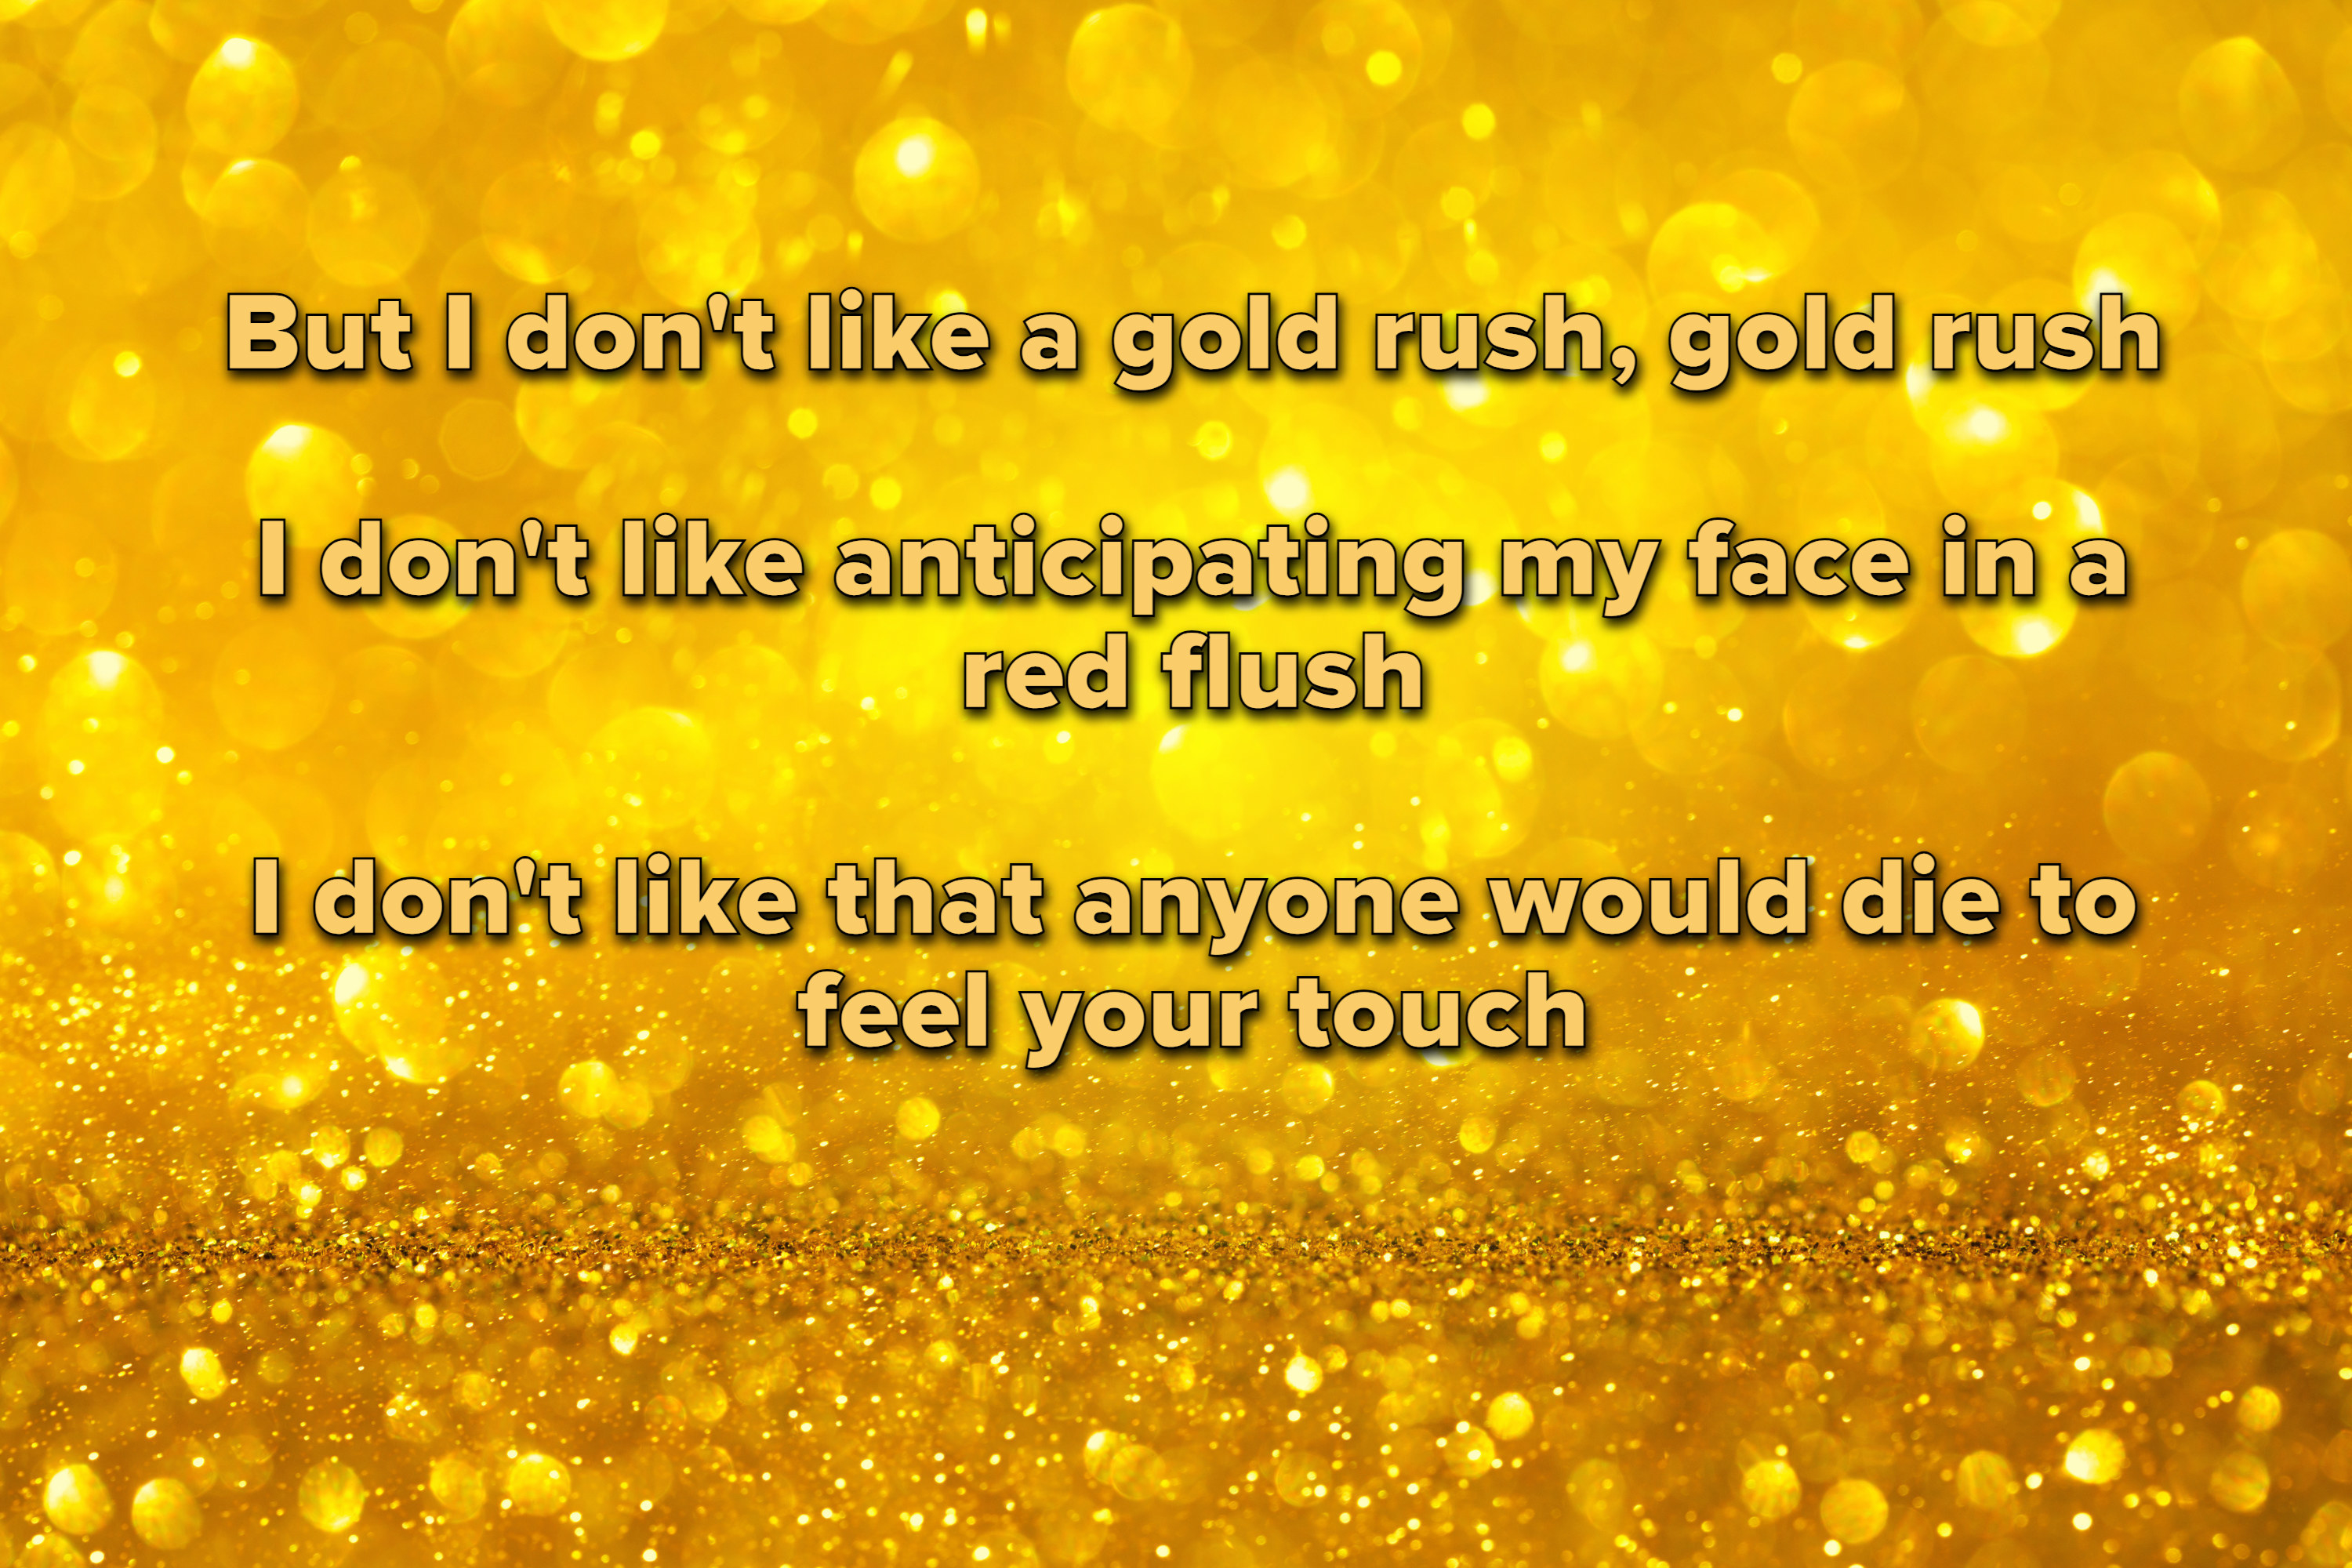 Taylor Swift – ​gold rush Lyrics